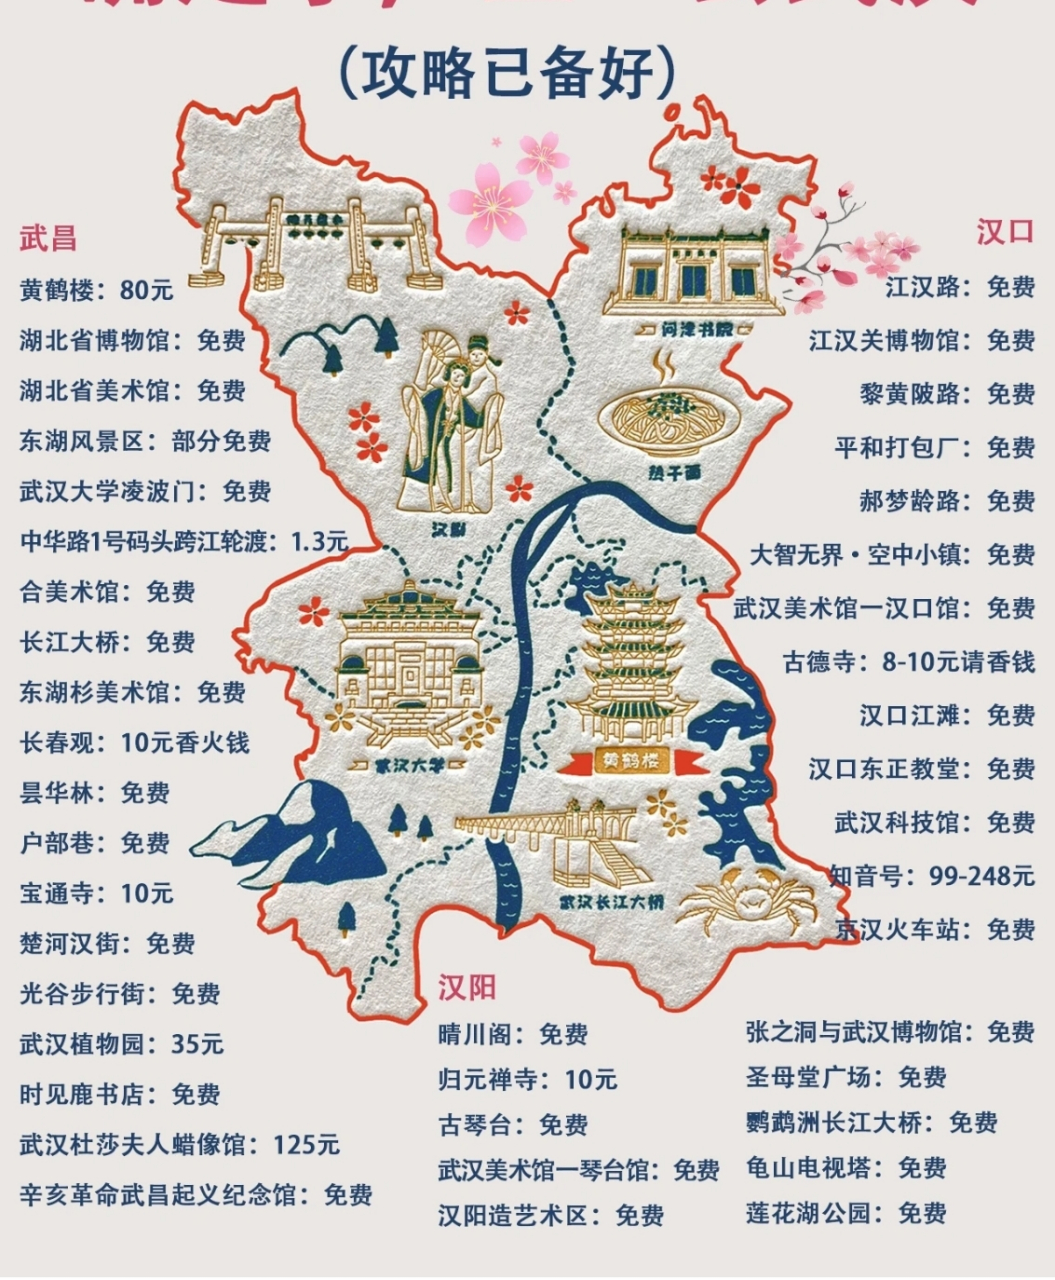 武汉旅游攻略 武汉旅游地图 强烈推荐点赞收藏